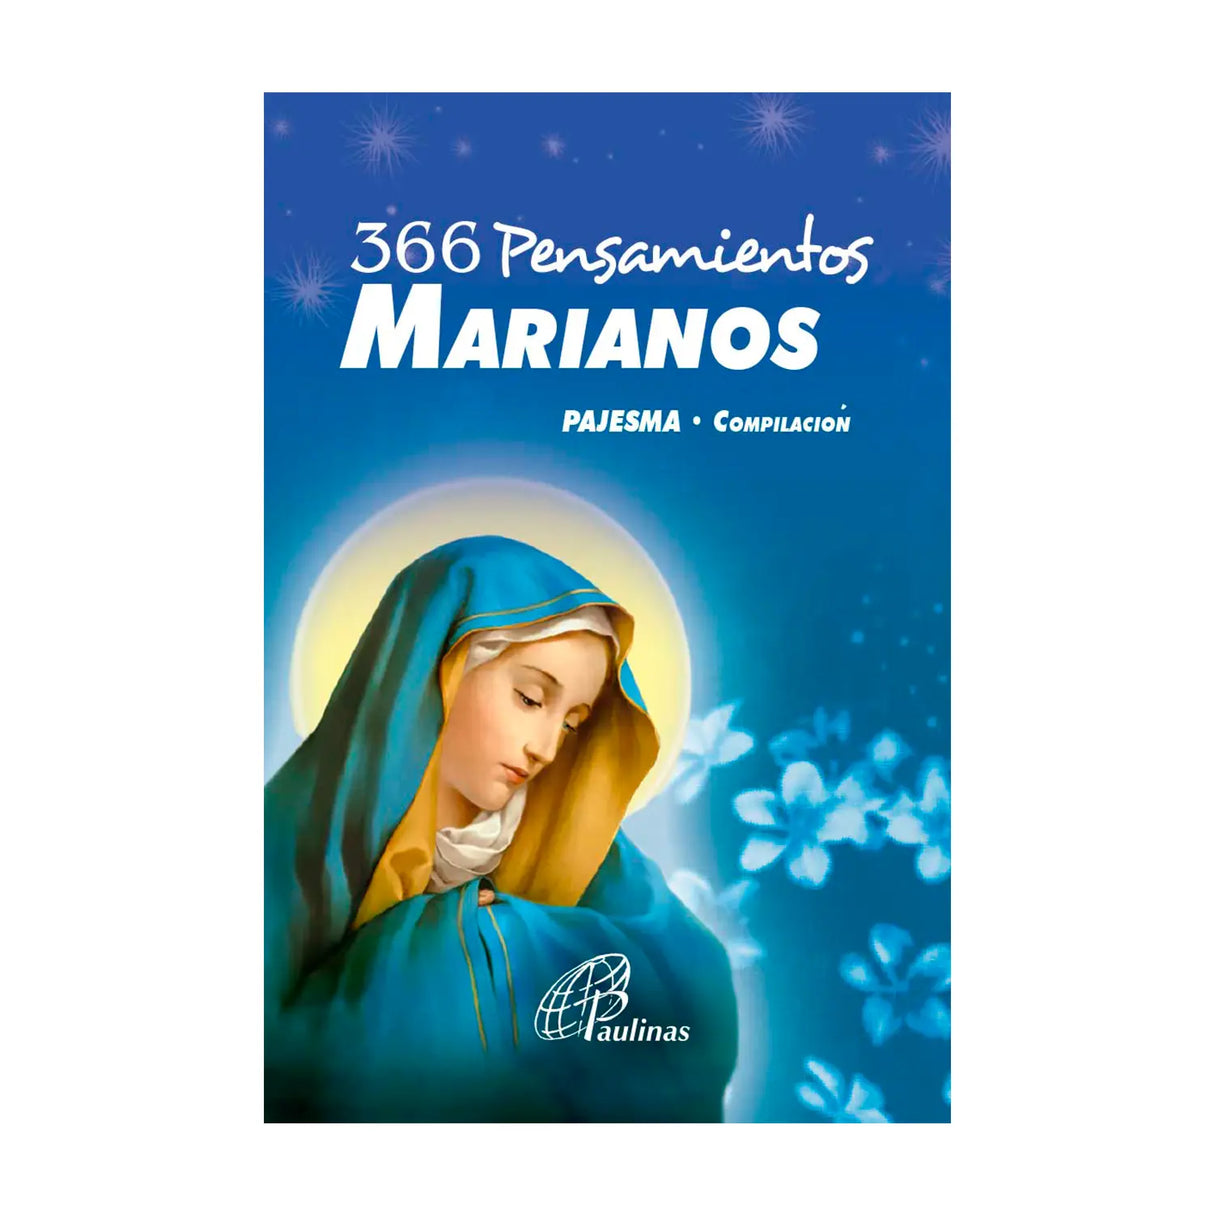 366 Pensamientos marianos